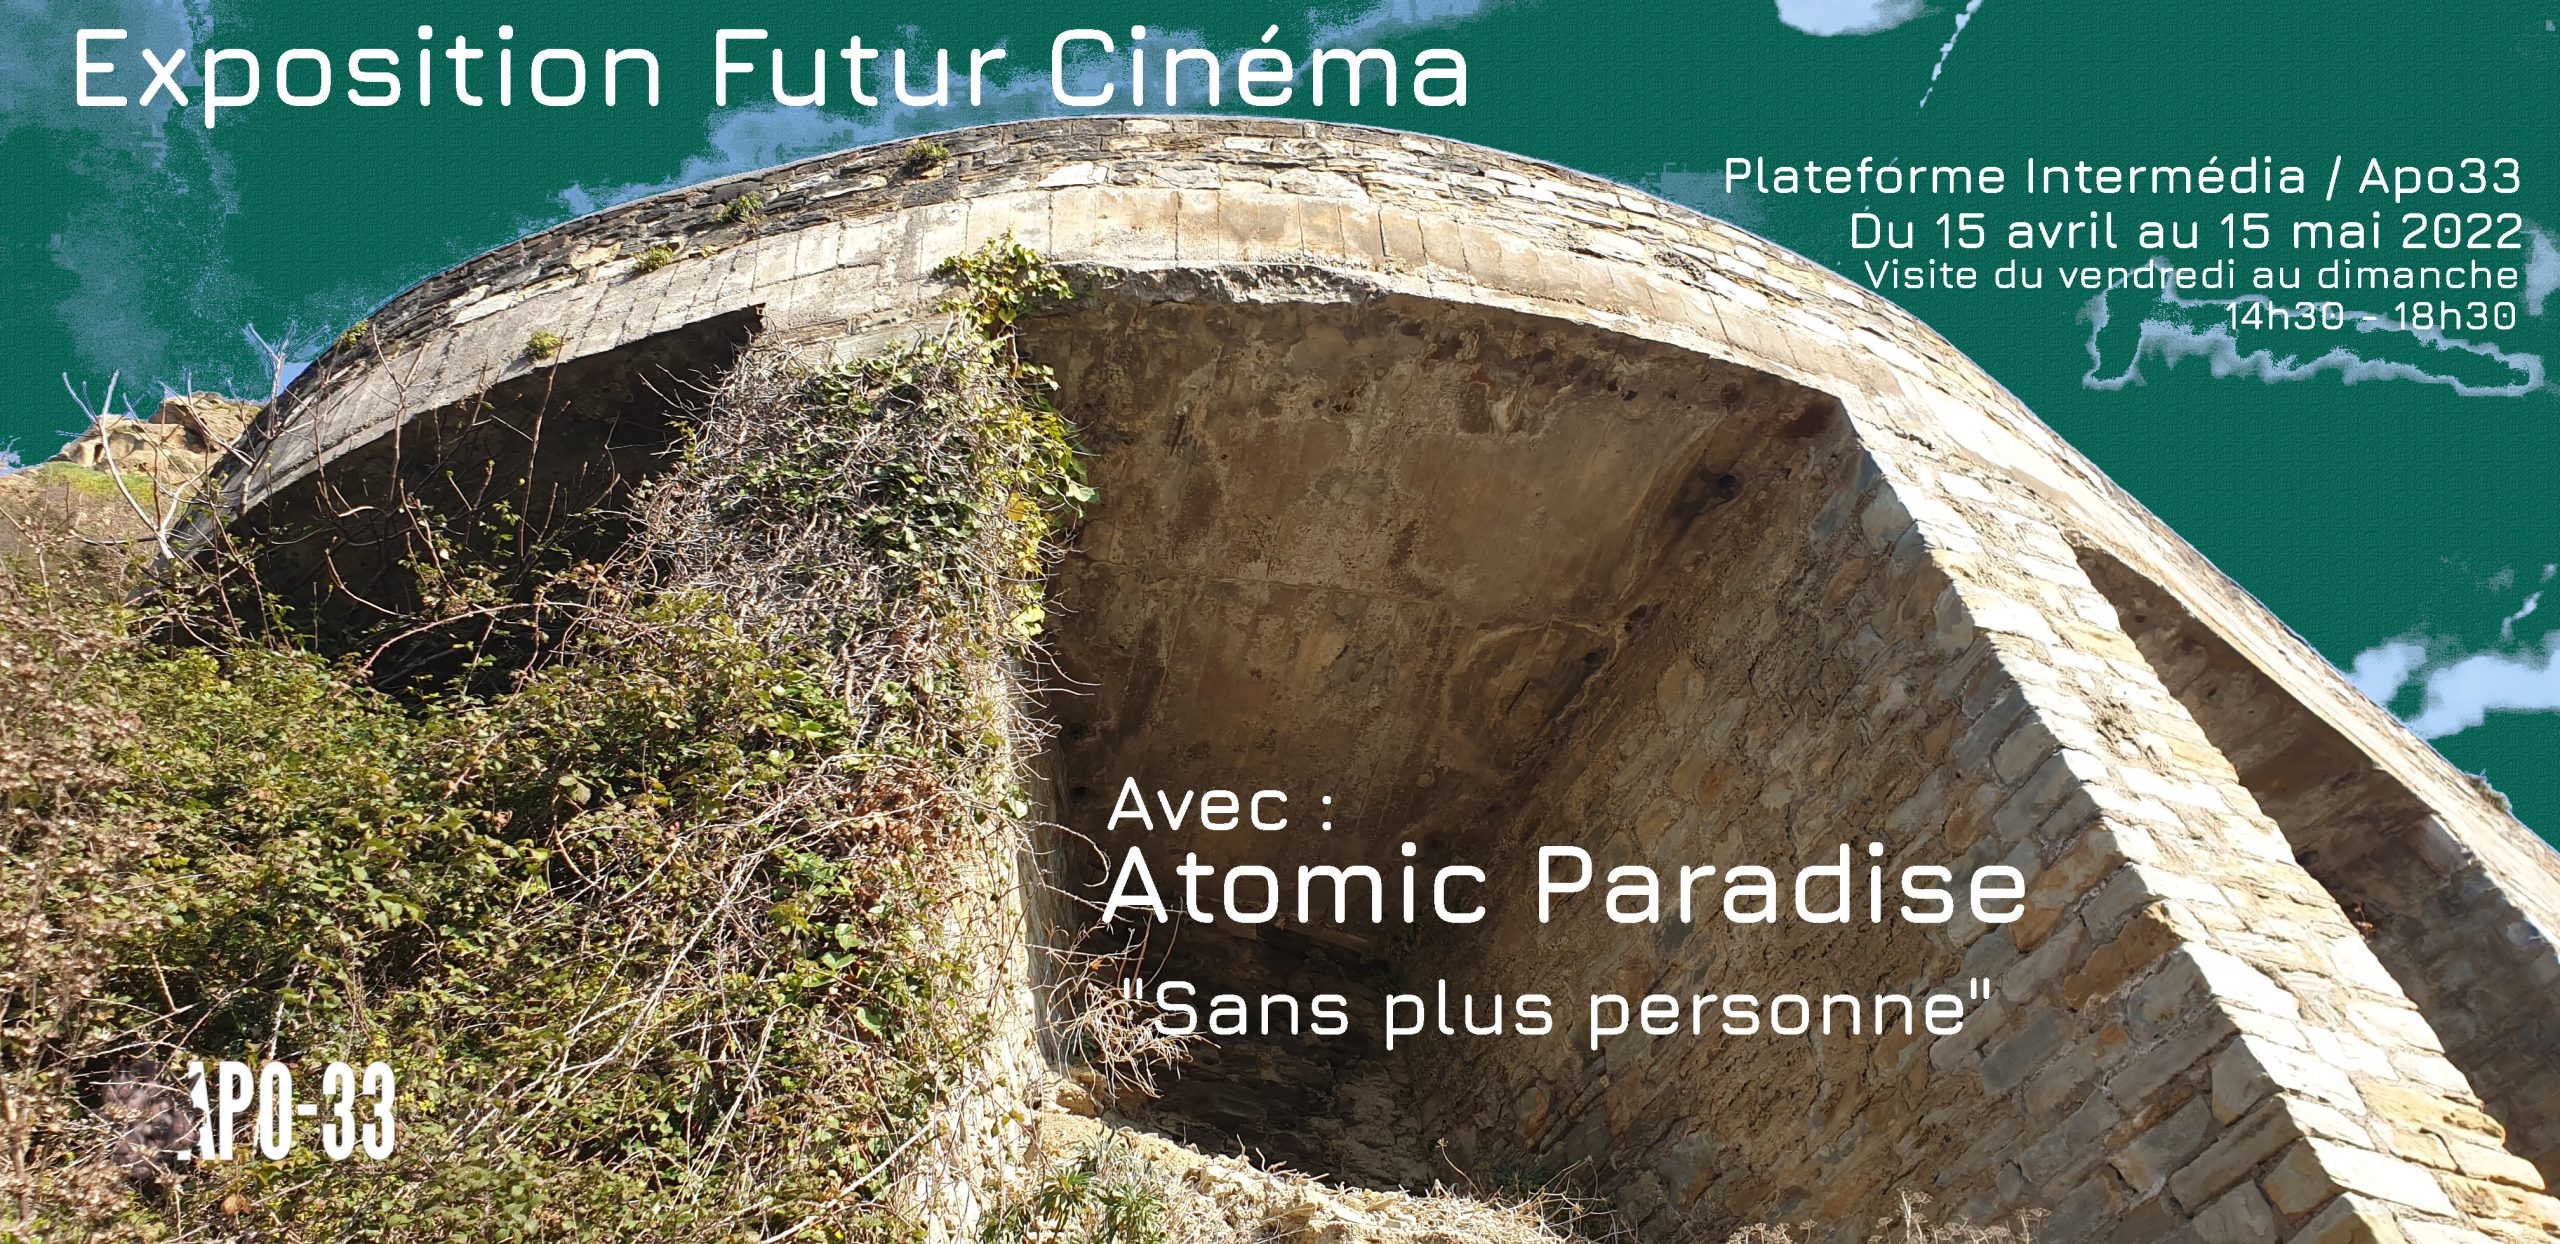 Exposition Futur Cinéma avec Atomic Paradise